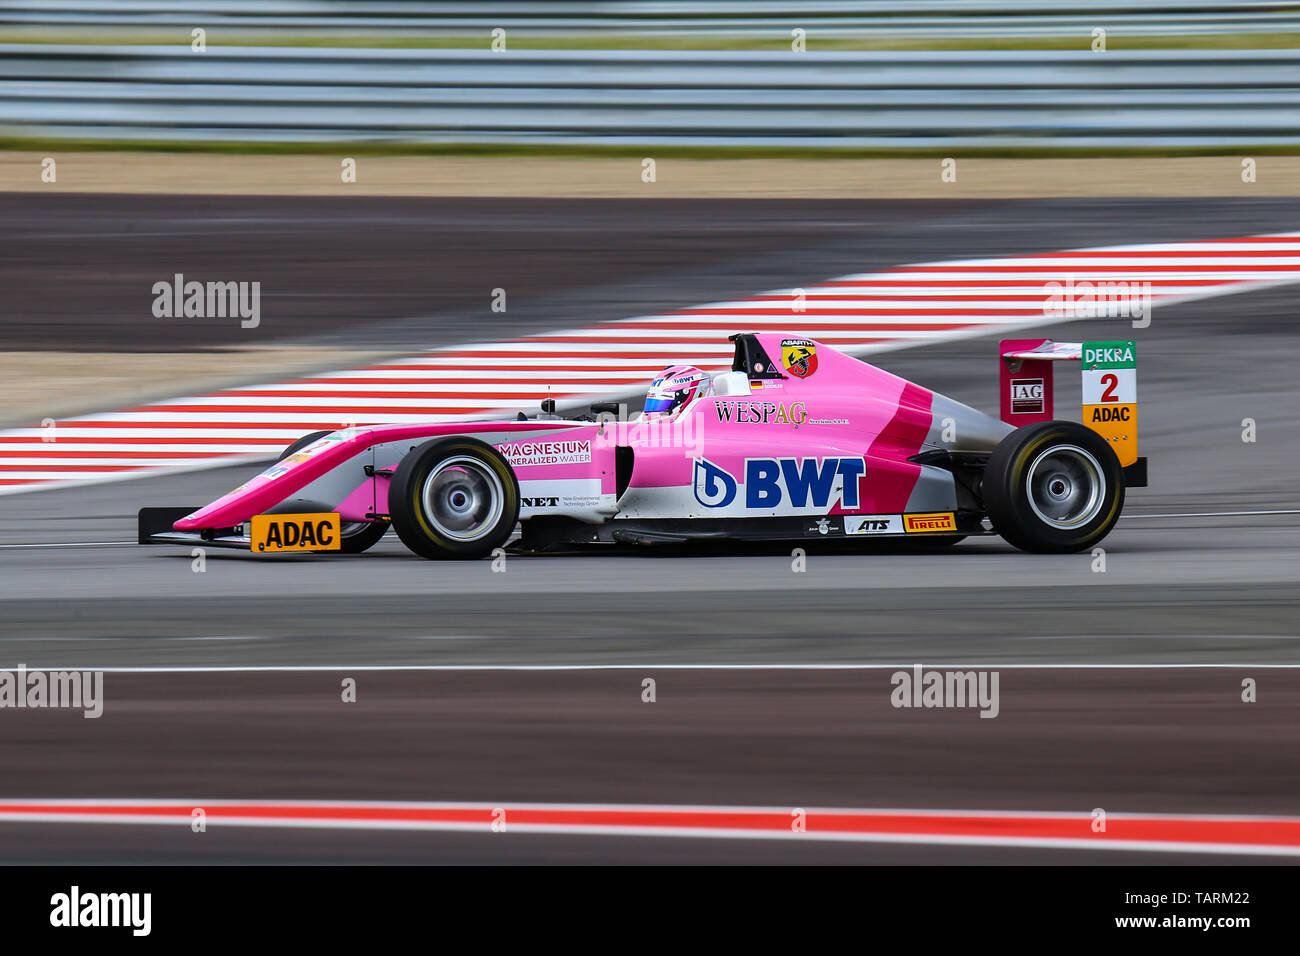 Oschersleben, Allemagne, le 28 avril 2019 : Nico Gohler conducteur de l'équipe de l'ADAC Berlin-brandebourg e.V. allemande au cours d'une course de Formule 4 au Motorsport Arena Banque D'Images